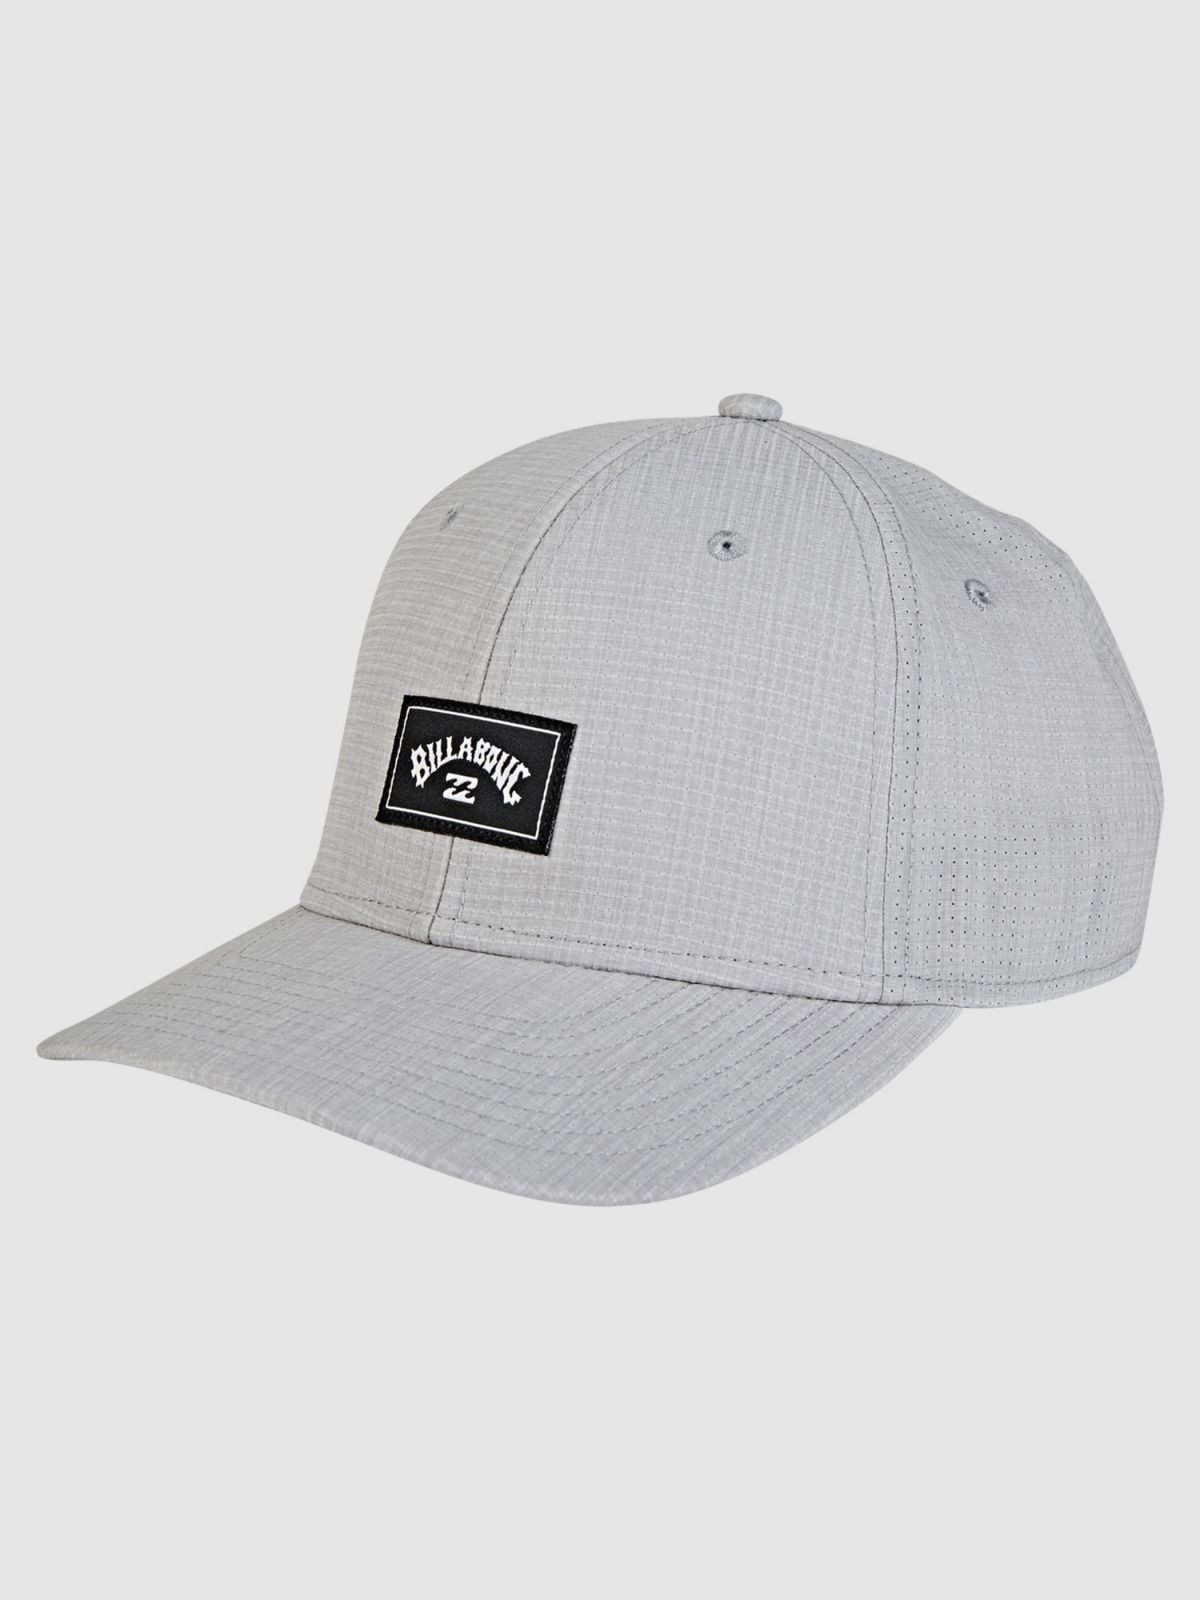  כובע מצחייה עם פאץ' לוגו / גברים של BILLABONG